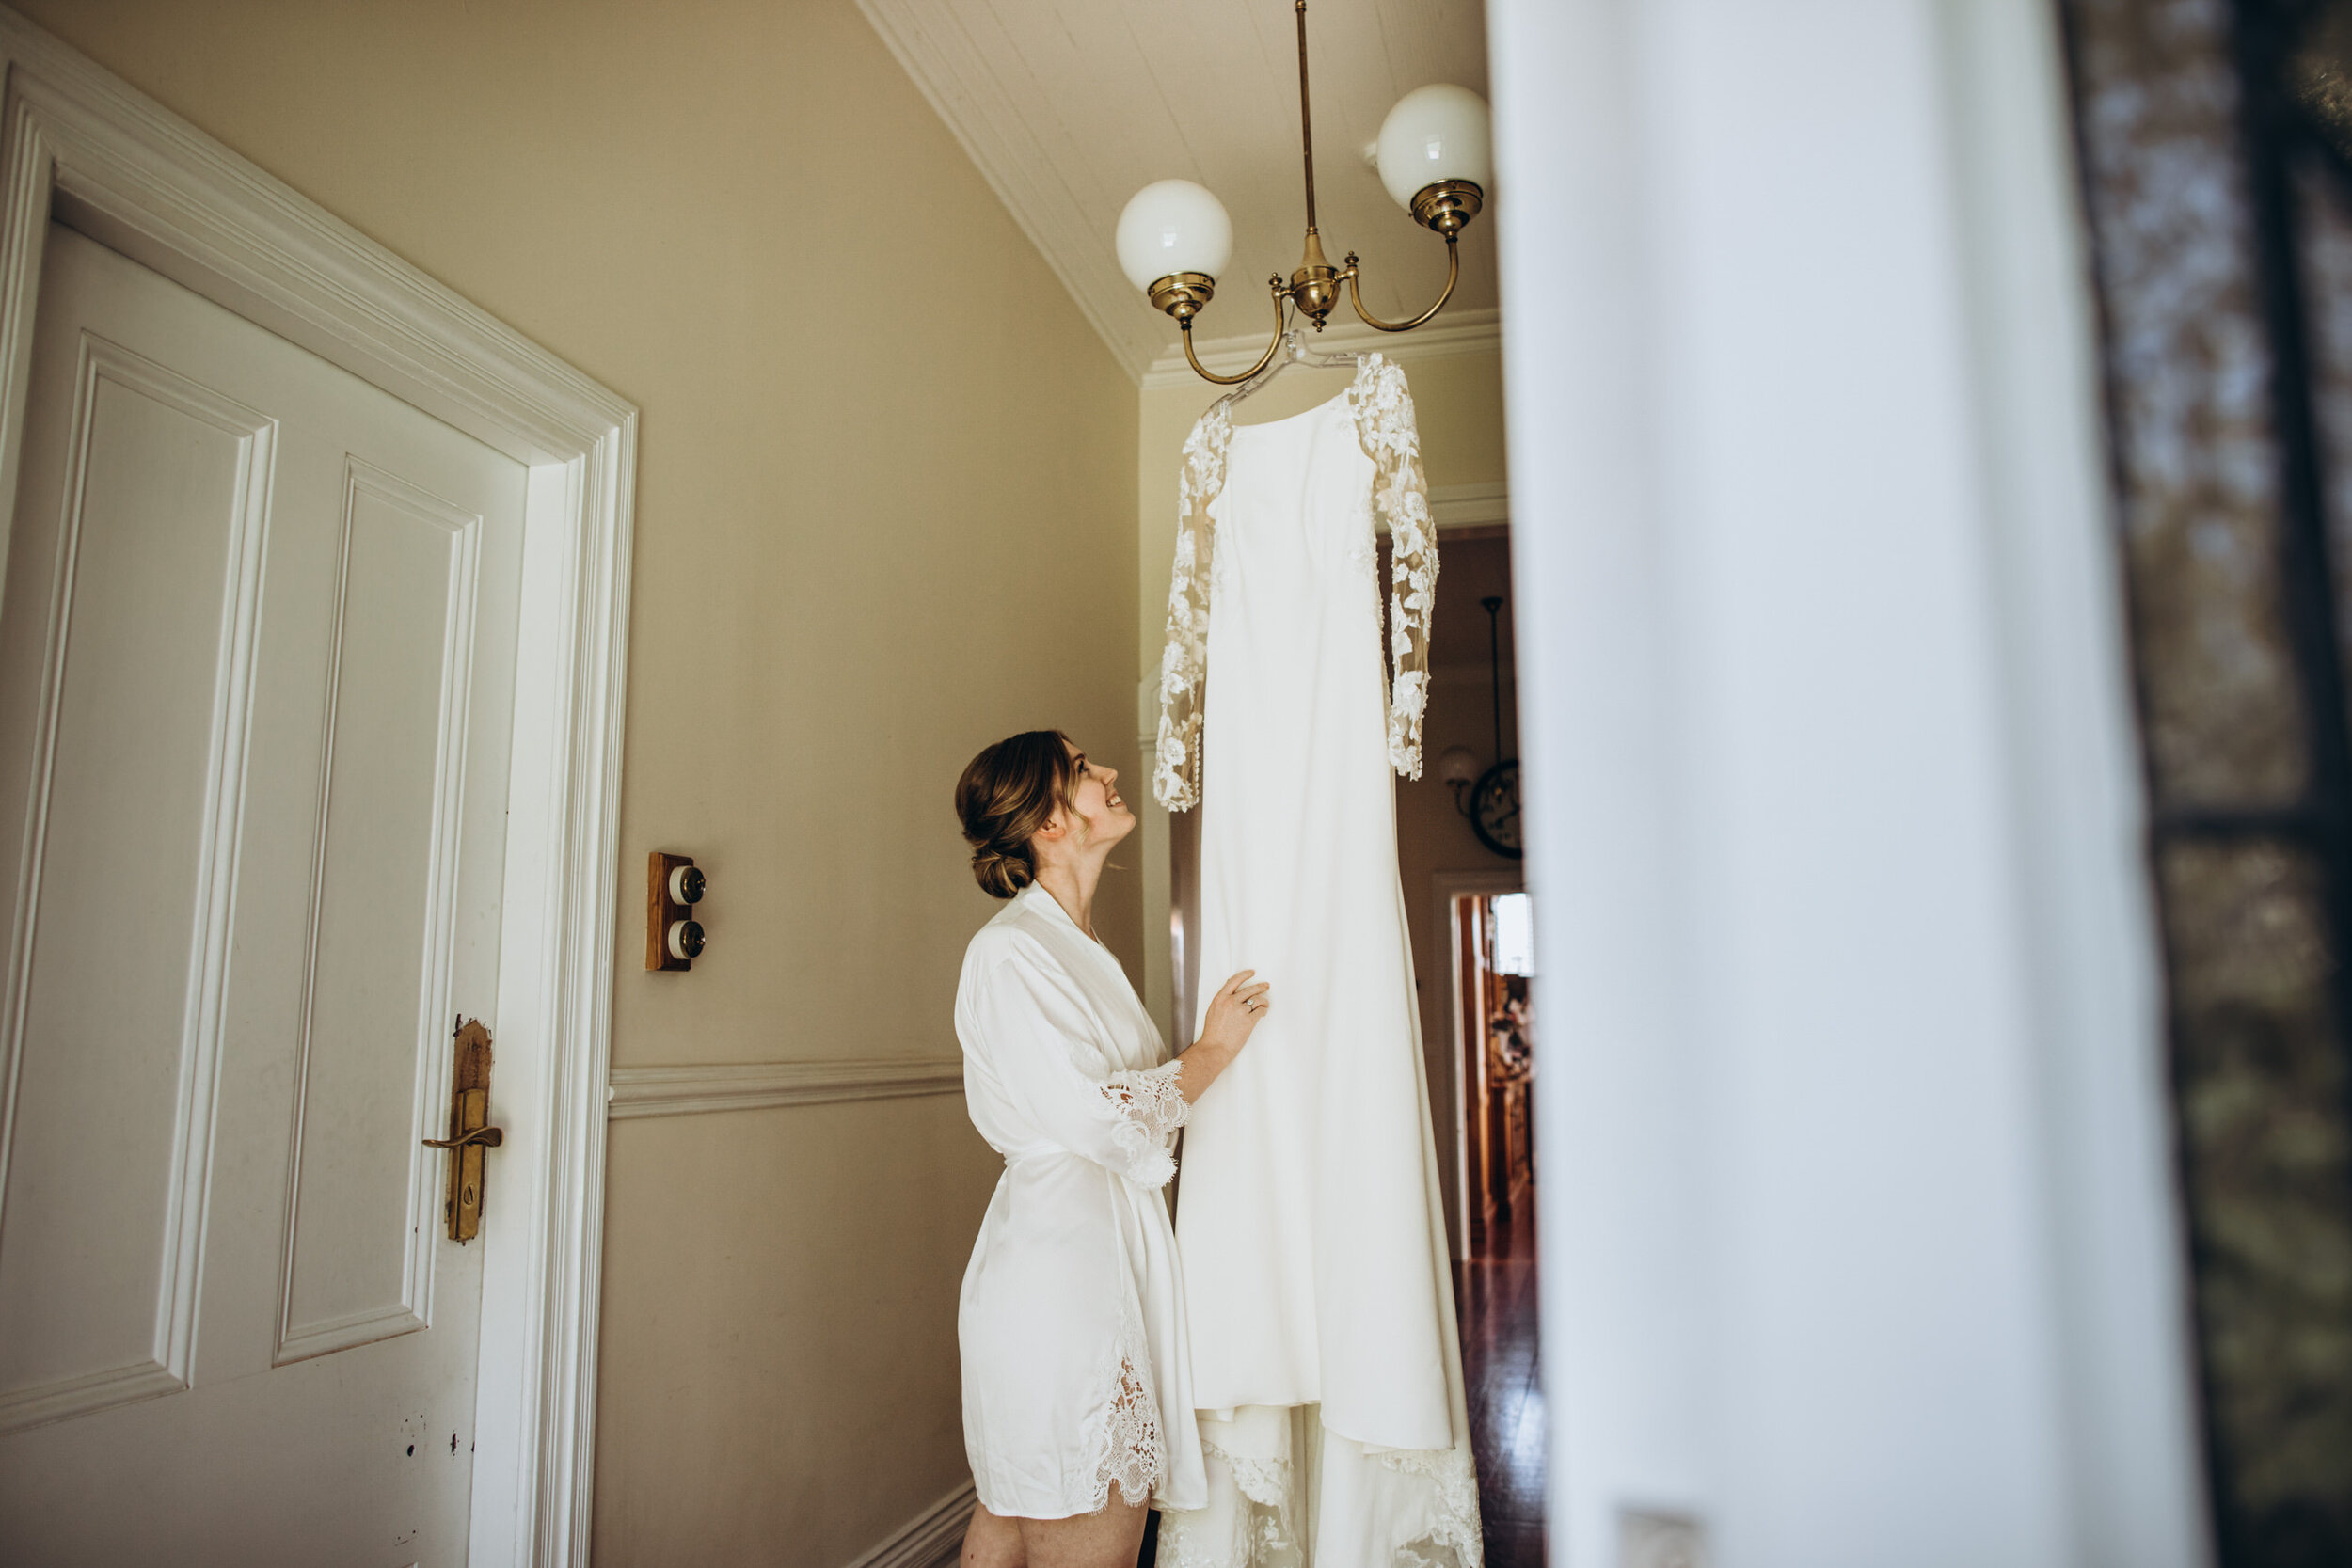 Bride getting dressed photos | Almaj Bridal wedding dress 